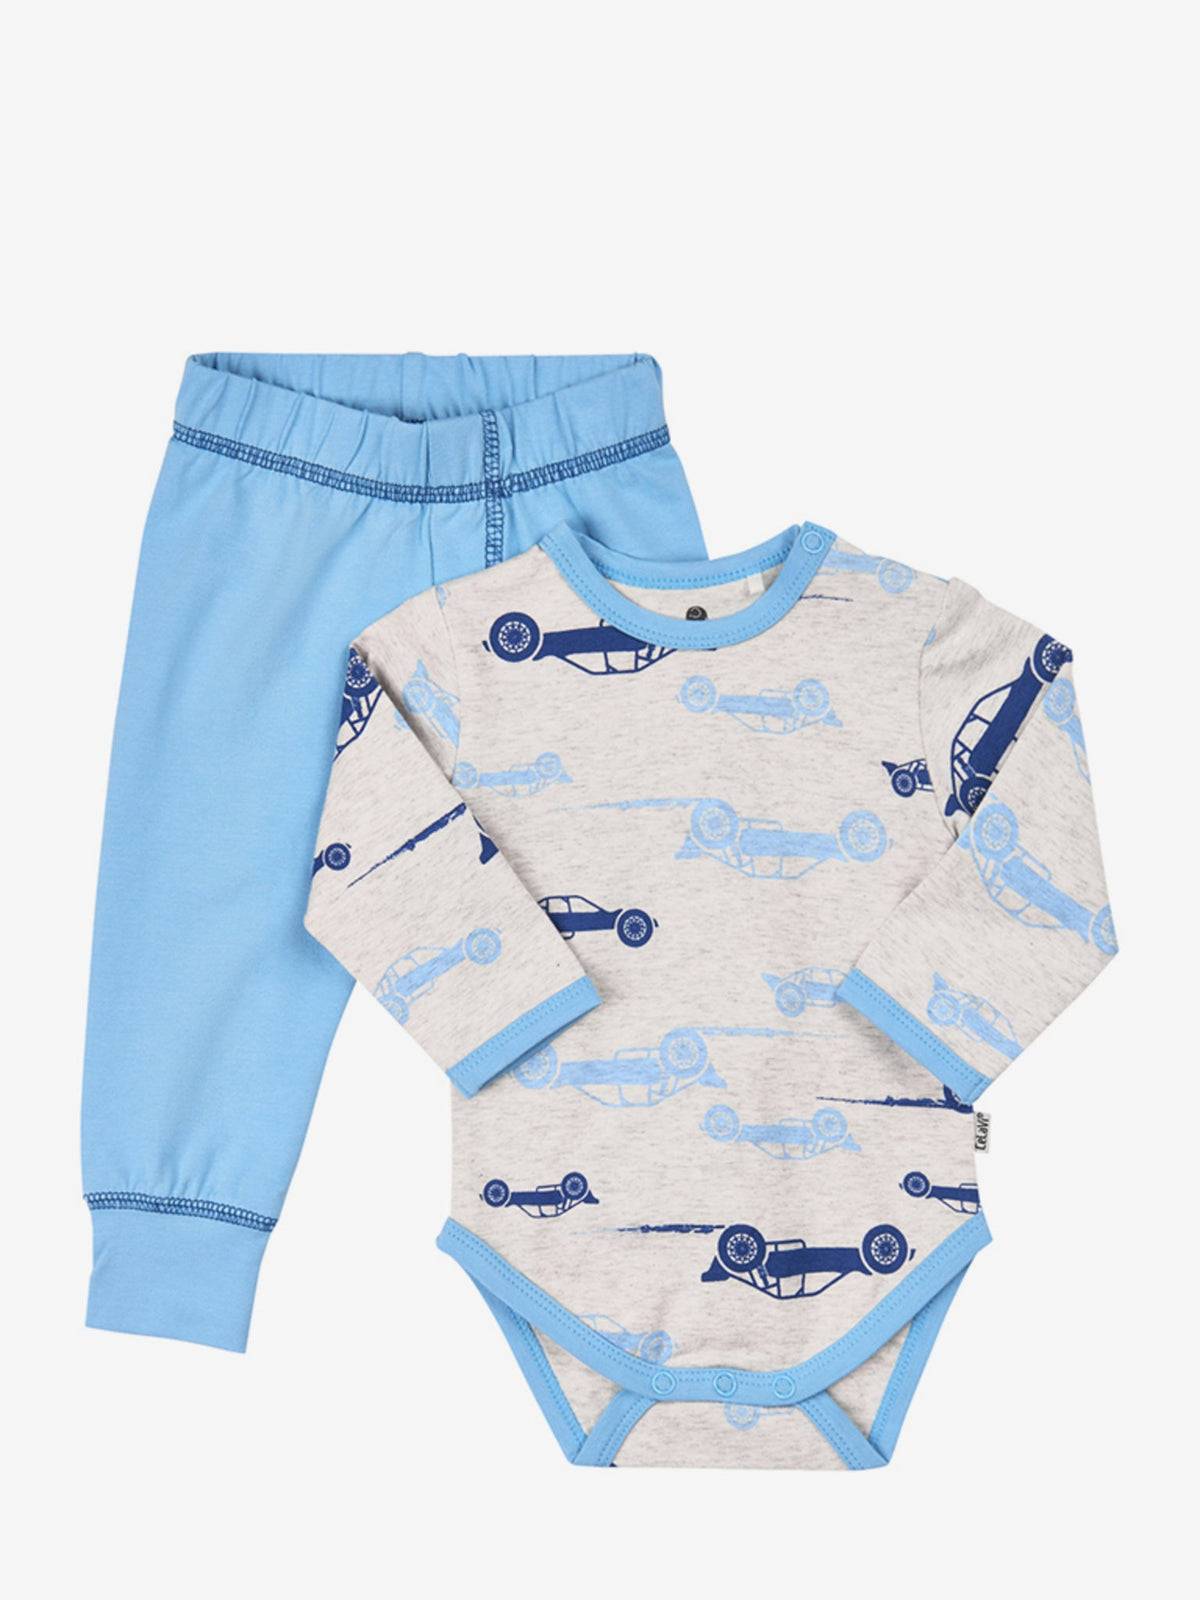 Baby Pyjamas Set with Race Car Pattern - Koko-Kamel.com